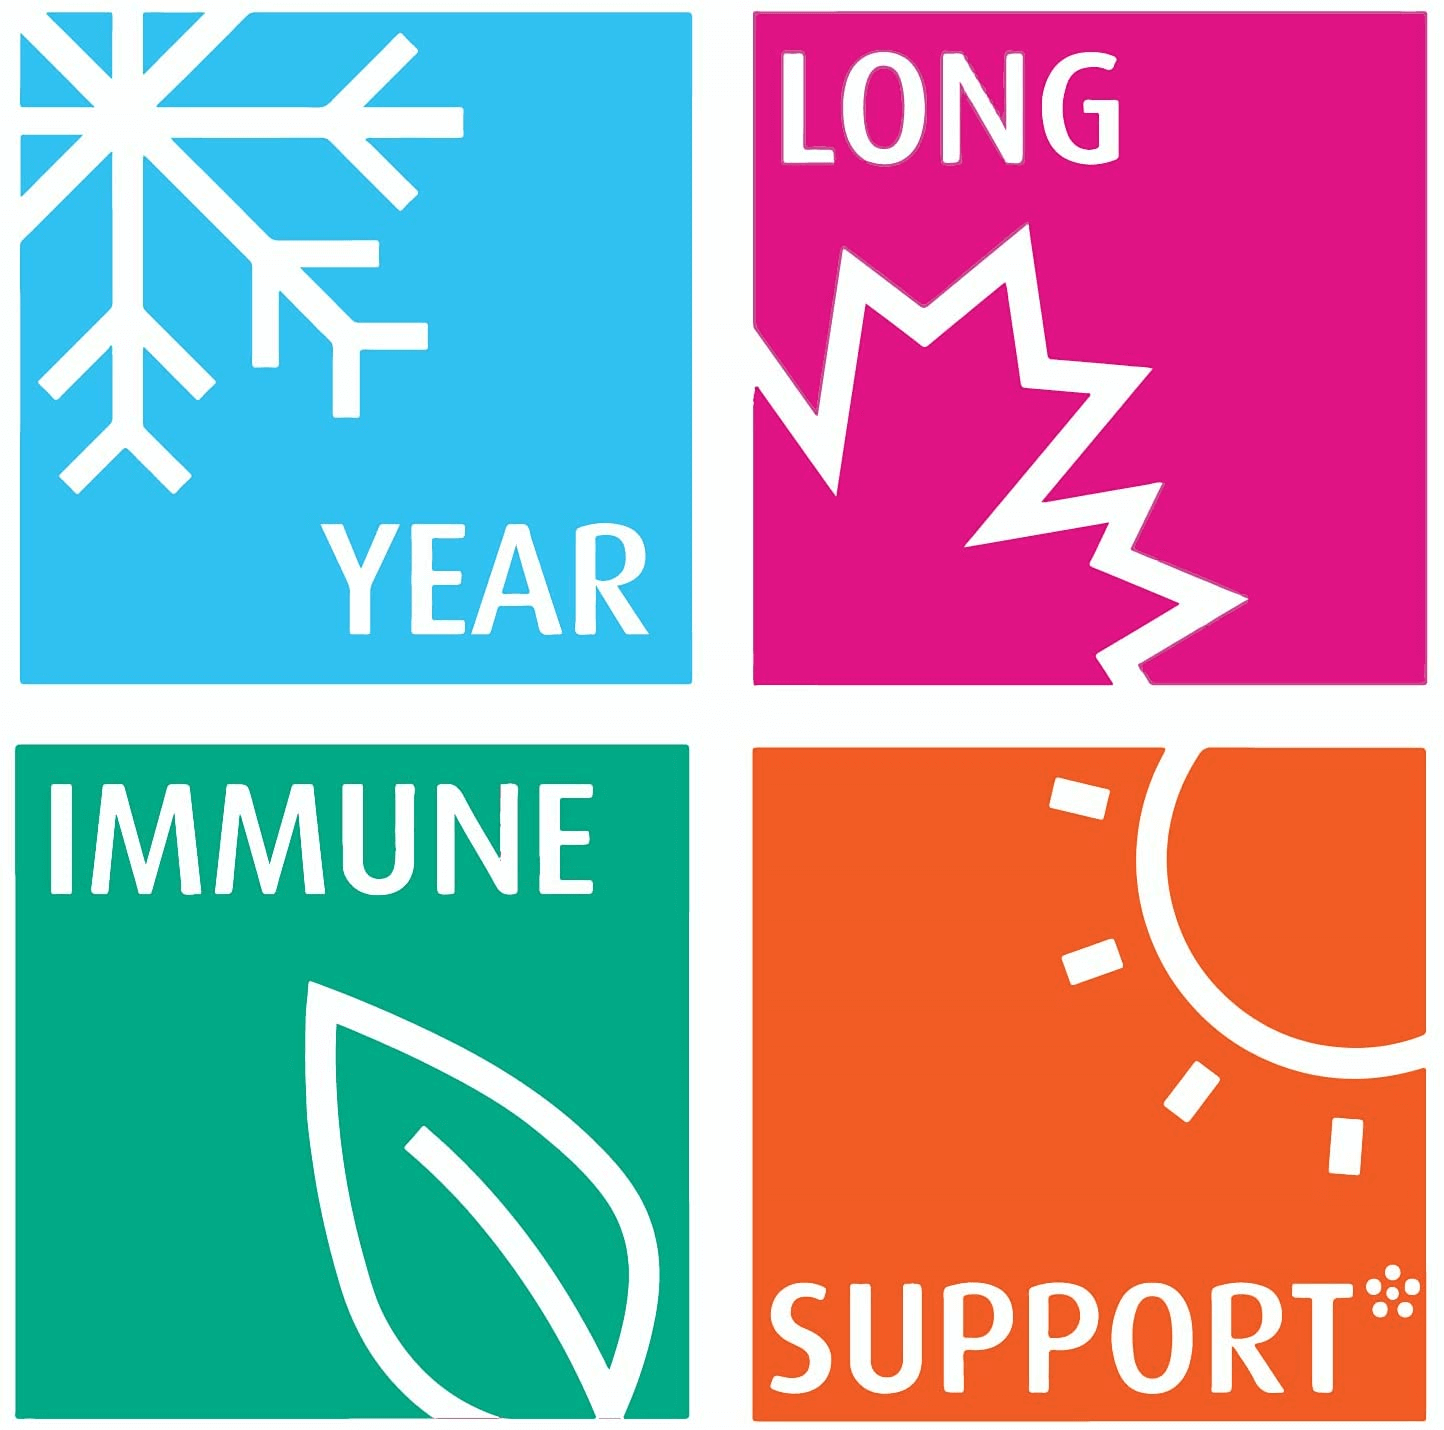 Qunol Immune Support 7 in 1 Immunity Defense Booster Supplement, Vitamin C, Zinc, Selenium, Elderberry, Echinacea, Eleuthero & Andrographis, Vegetarian Capsules, 90 Count - vitamenstore.com